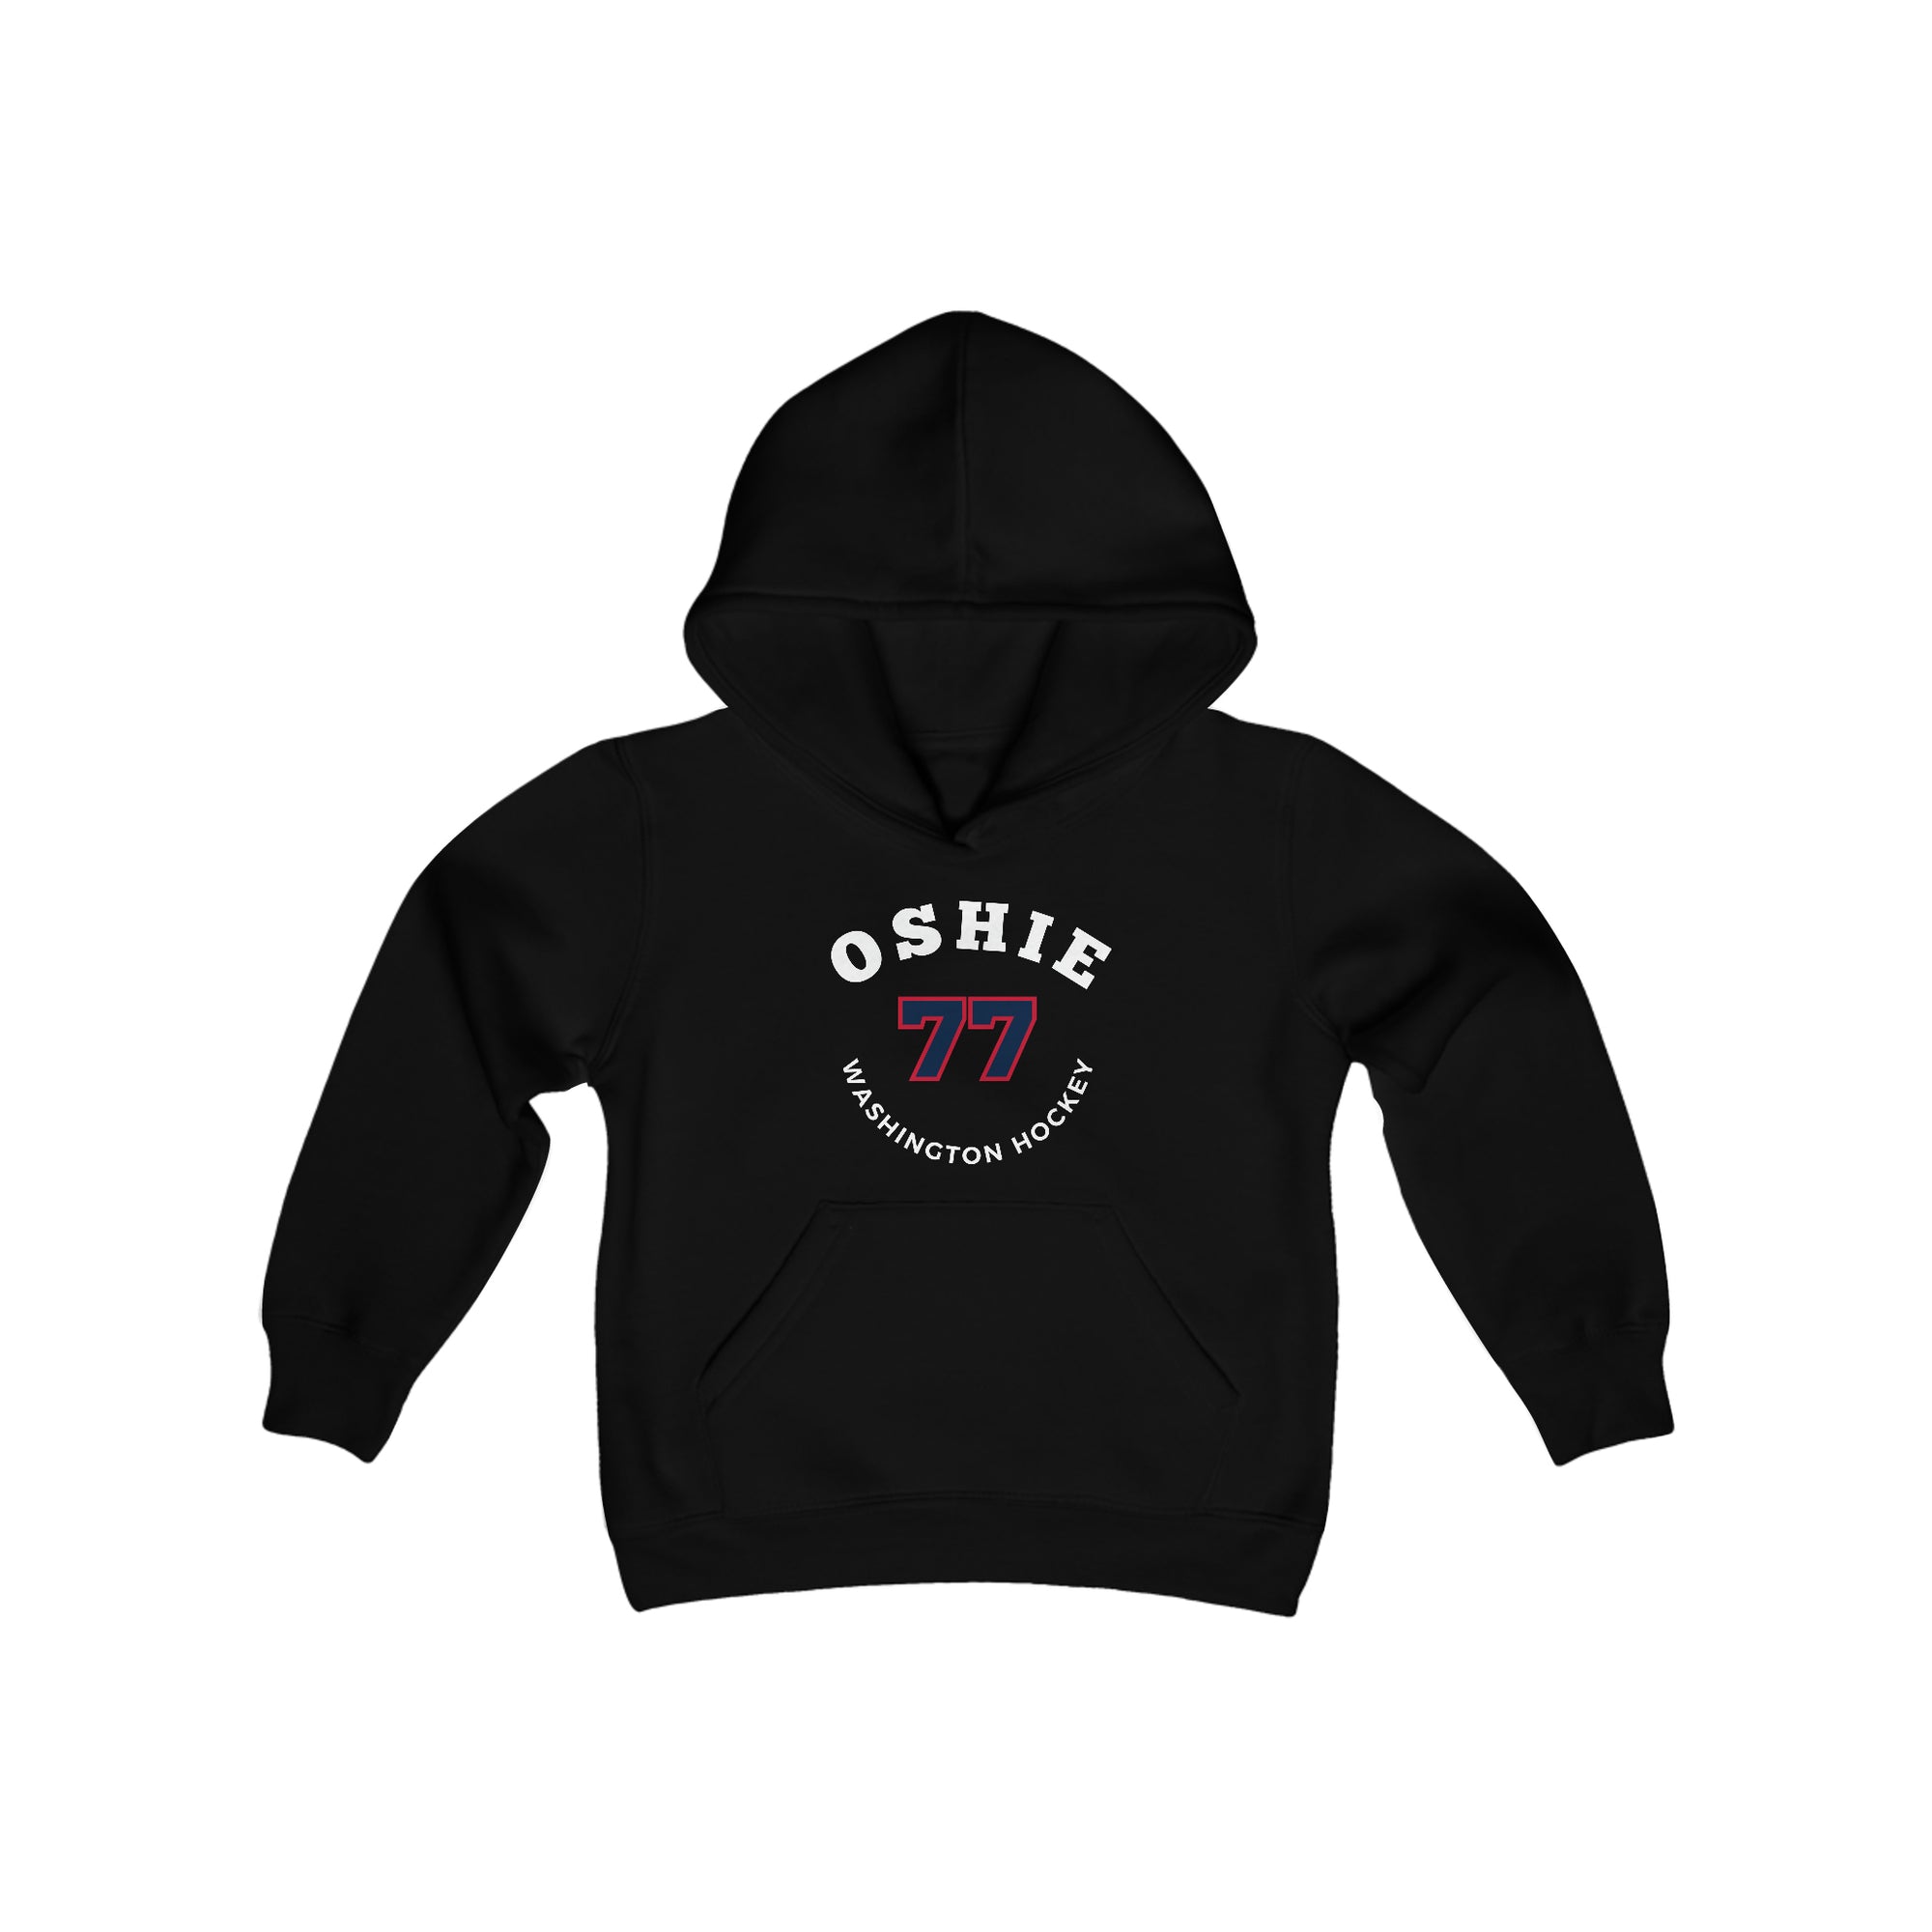 Oshie 77 Washington Hockey Number Arch Design Youth Hooded Sweatshirt